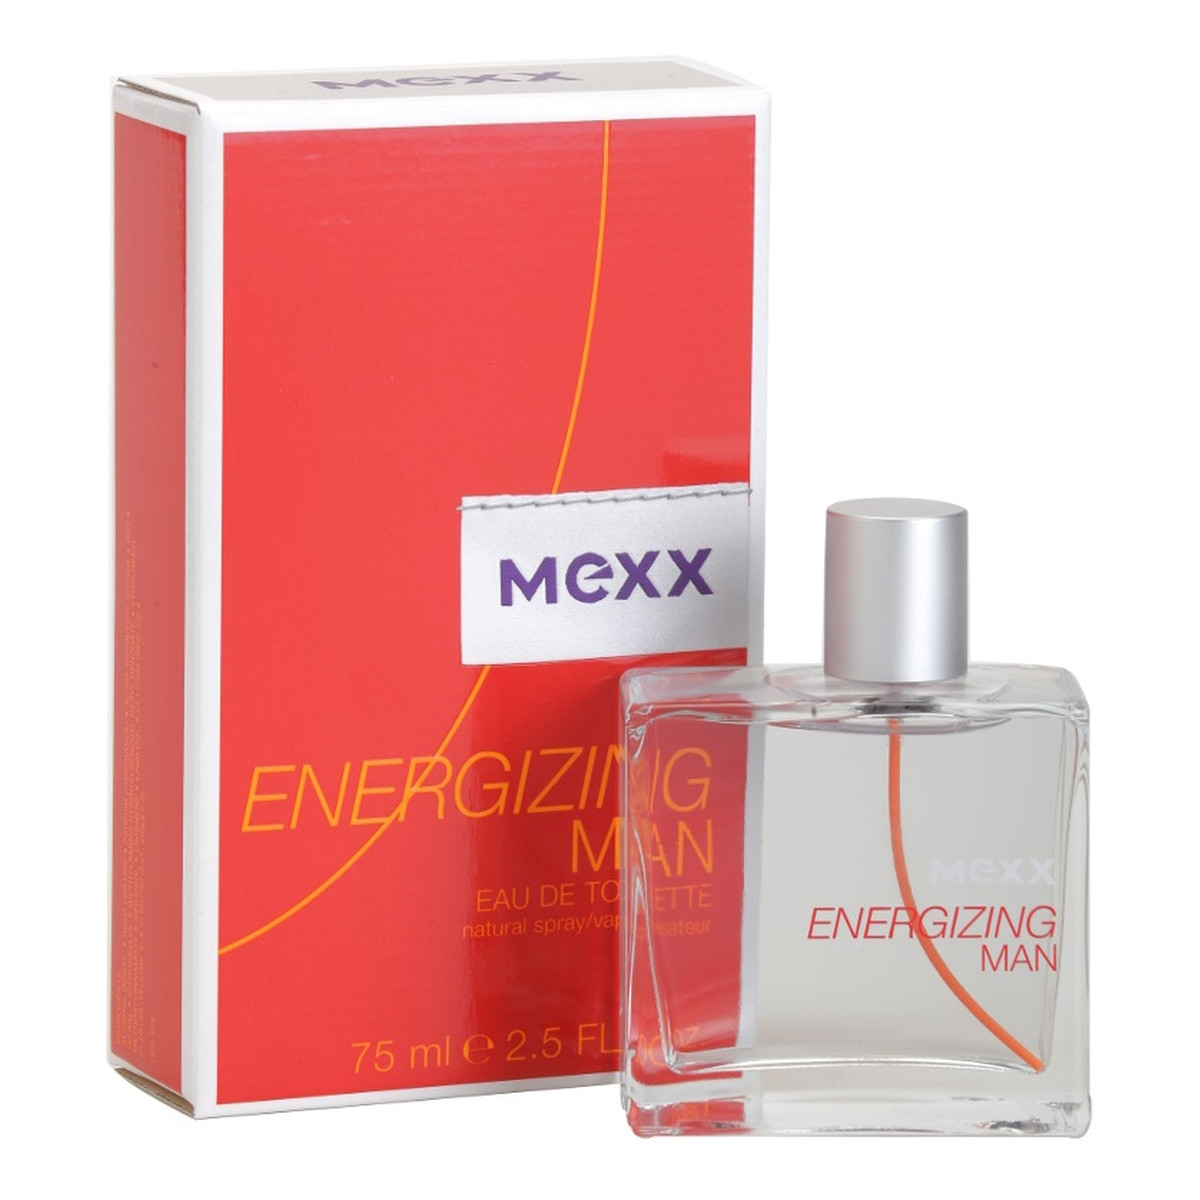 Mexx Energizing Man woda toaletowa dla mężczyzn 75ml